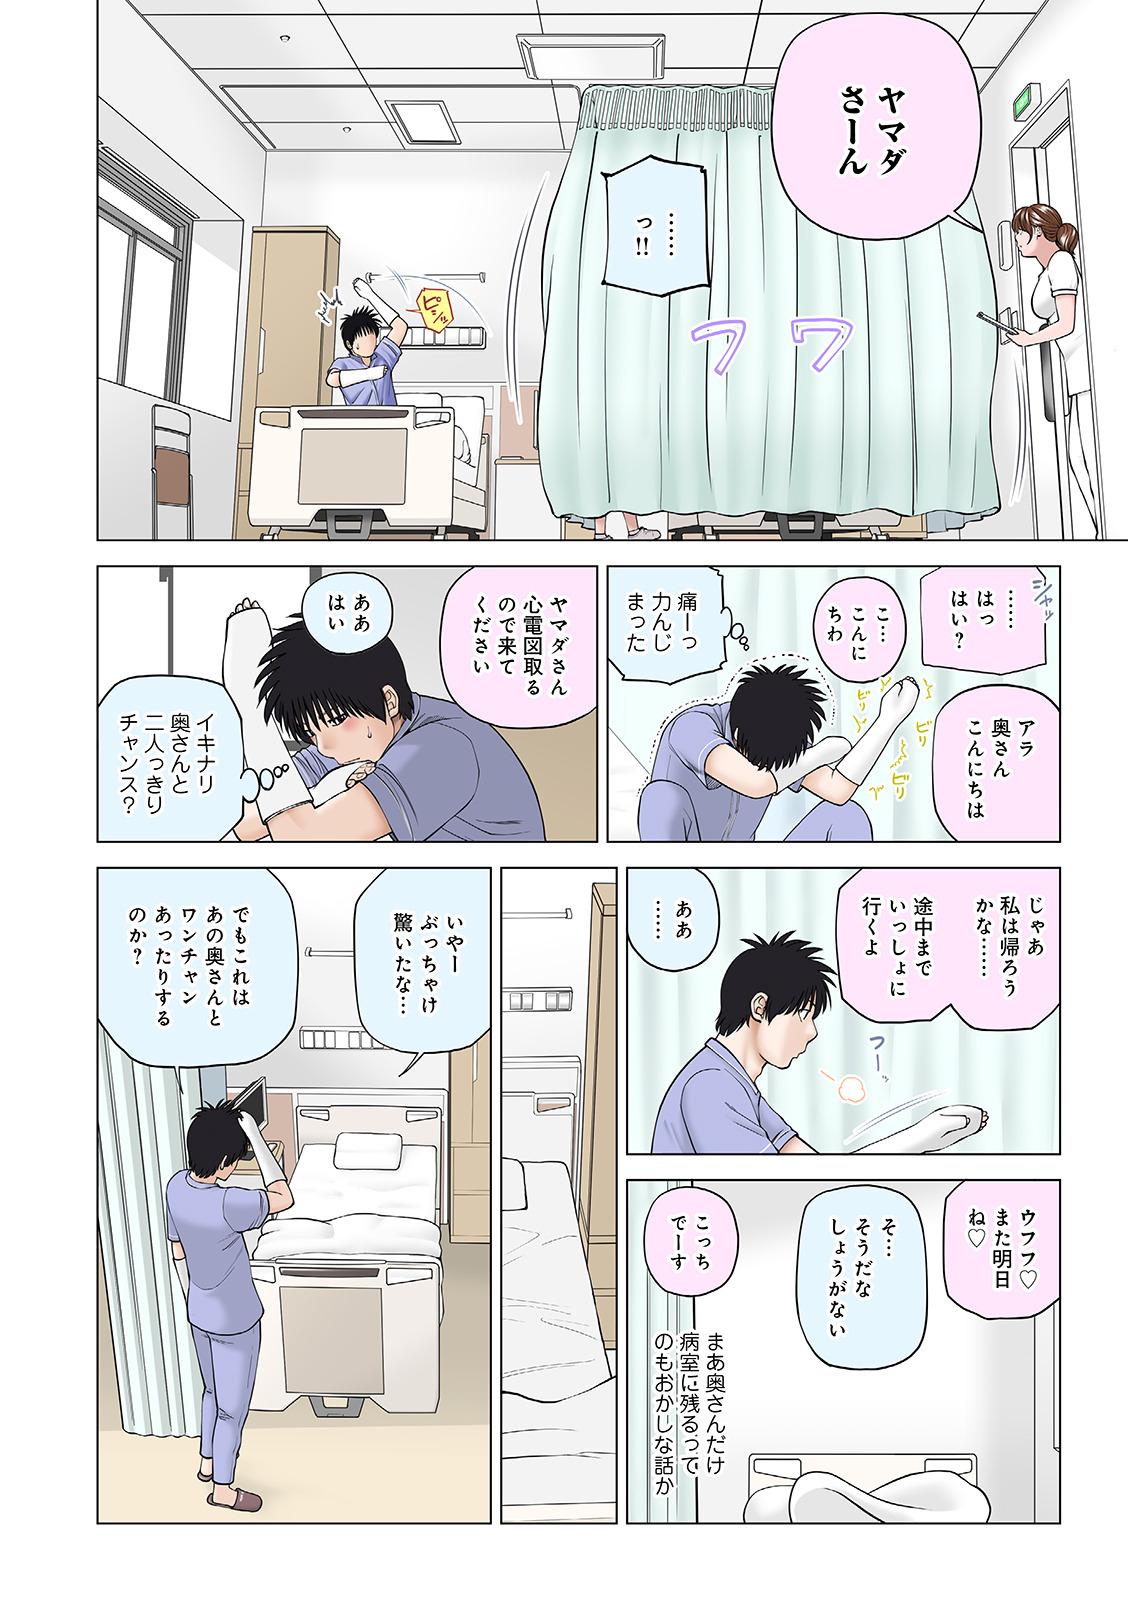 Pervert WEB Ban COMIC Gekiyaba! Vol. 144 Long Hair - Page 8